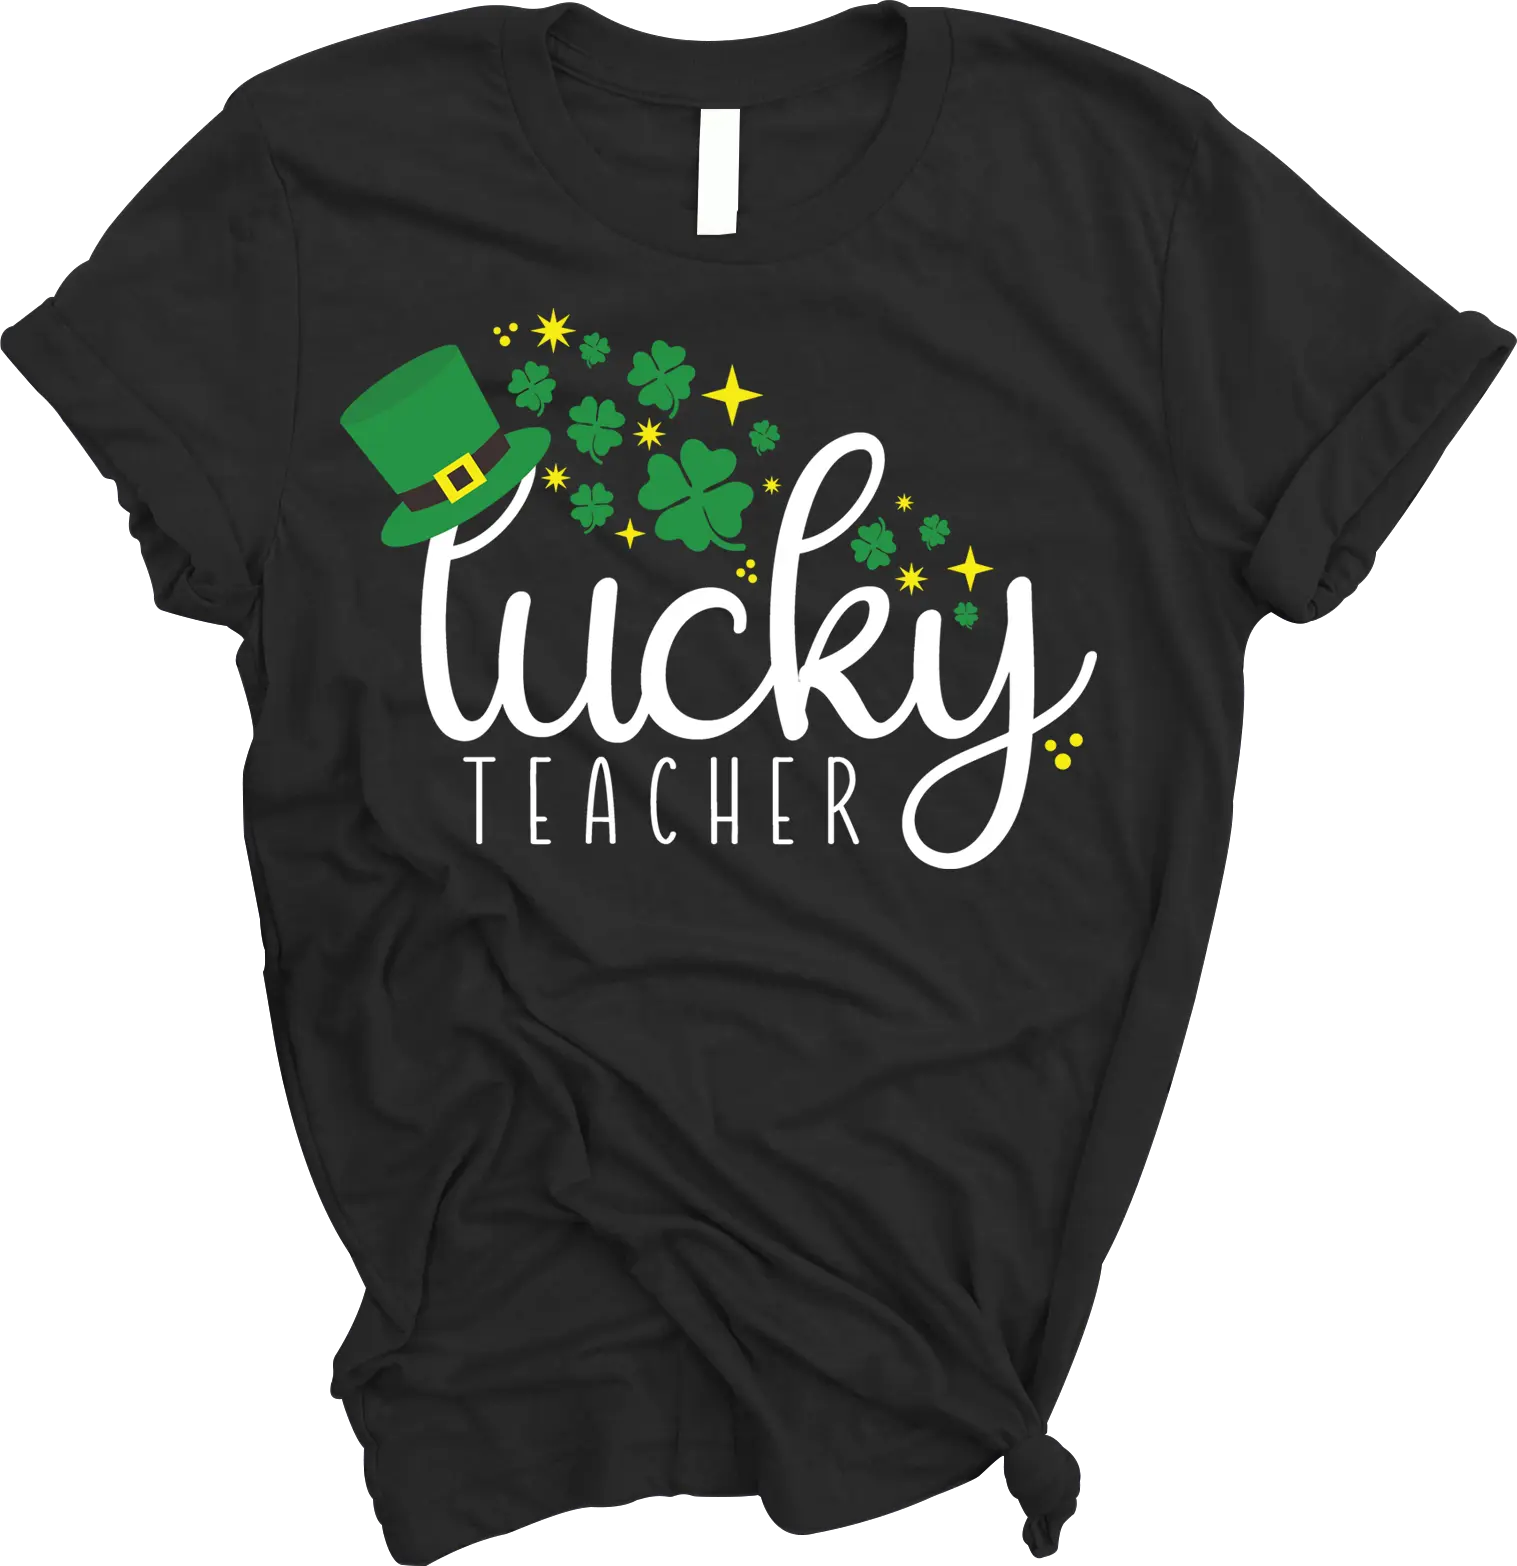 “Lucky Teacher” Tee